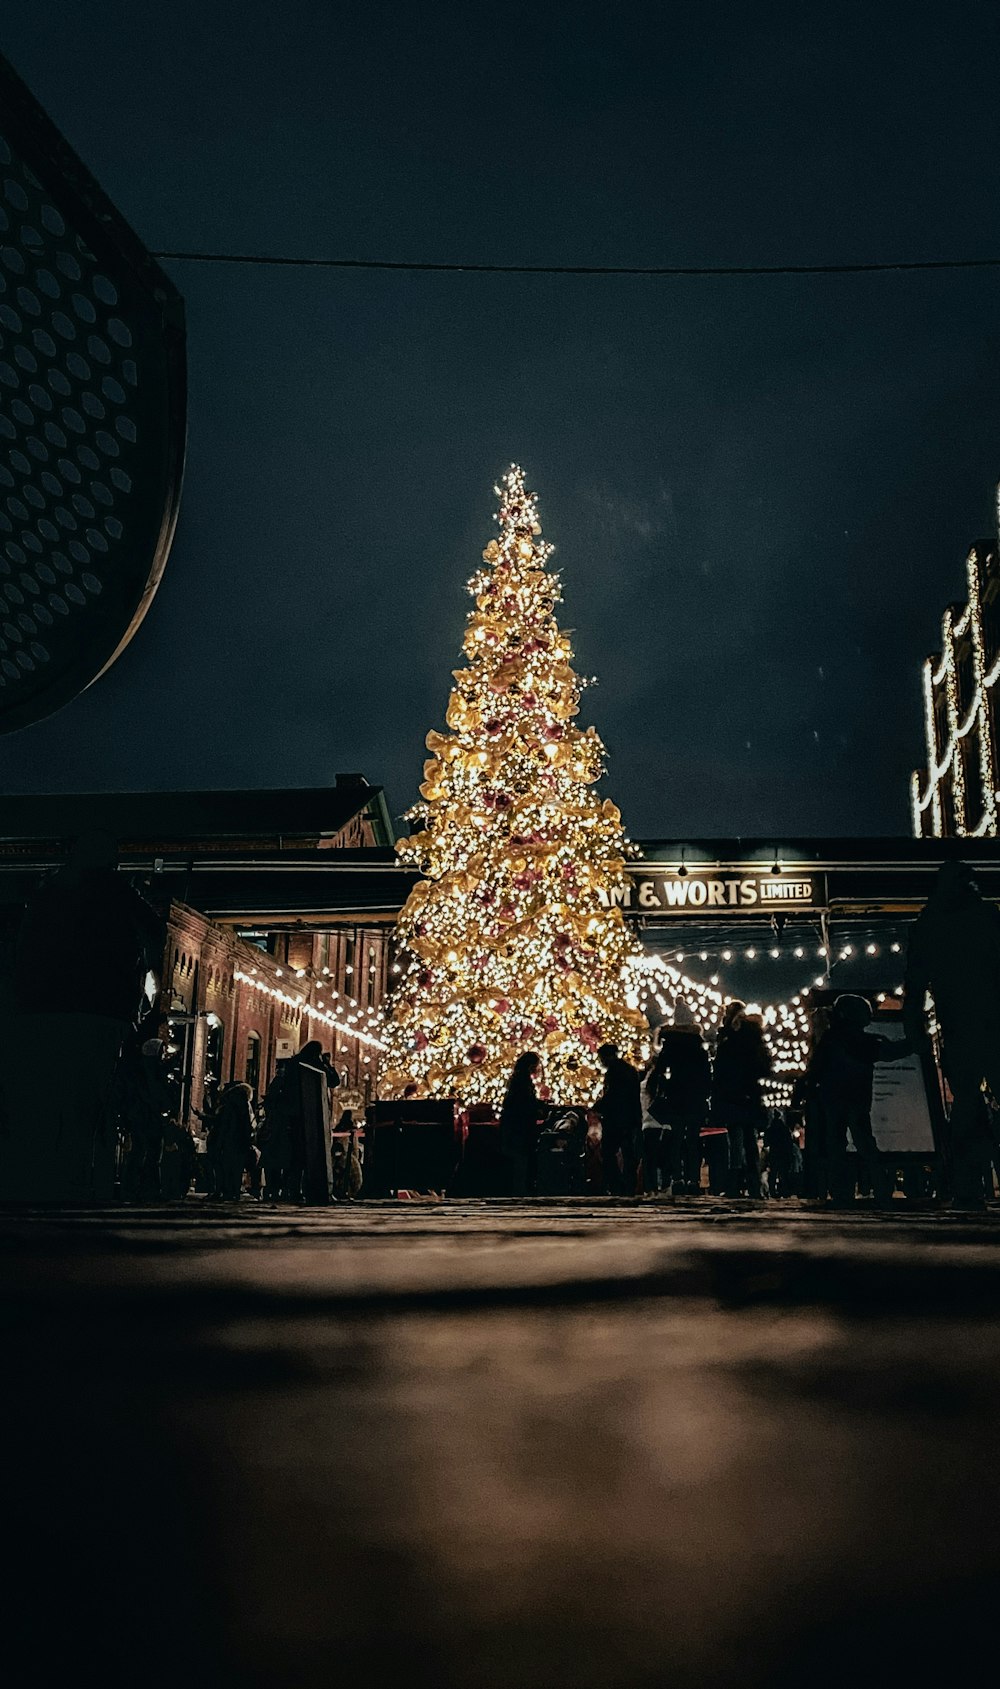 Personas que caminan cerca del árbol de Navidad iluminado durante la noche